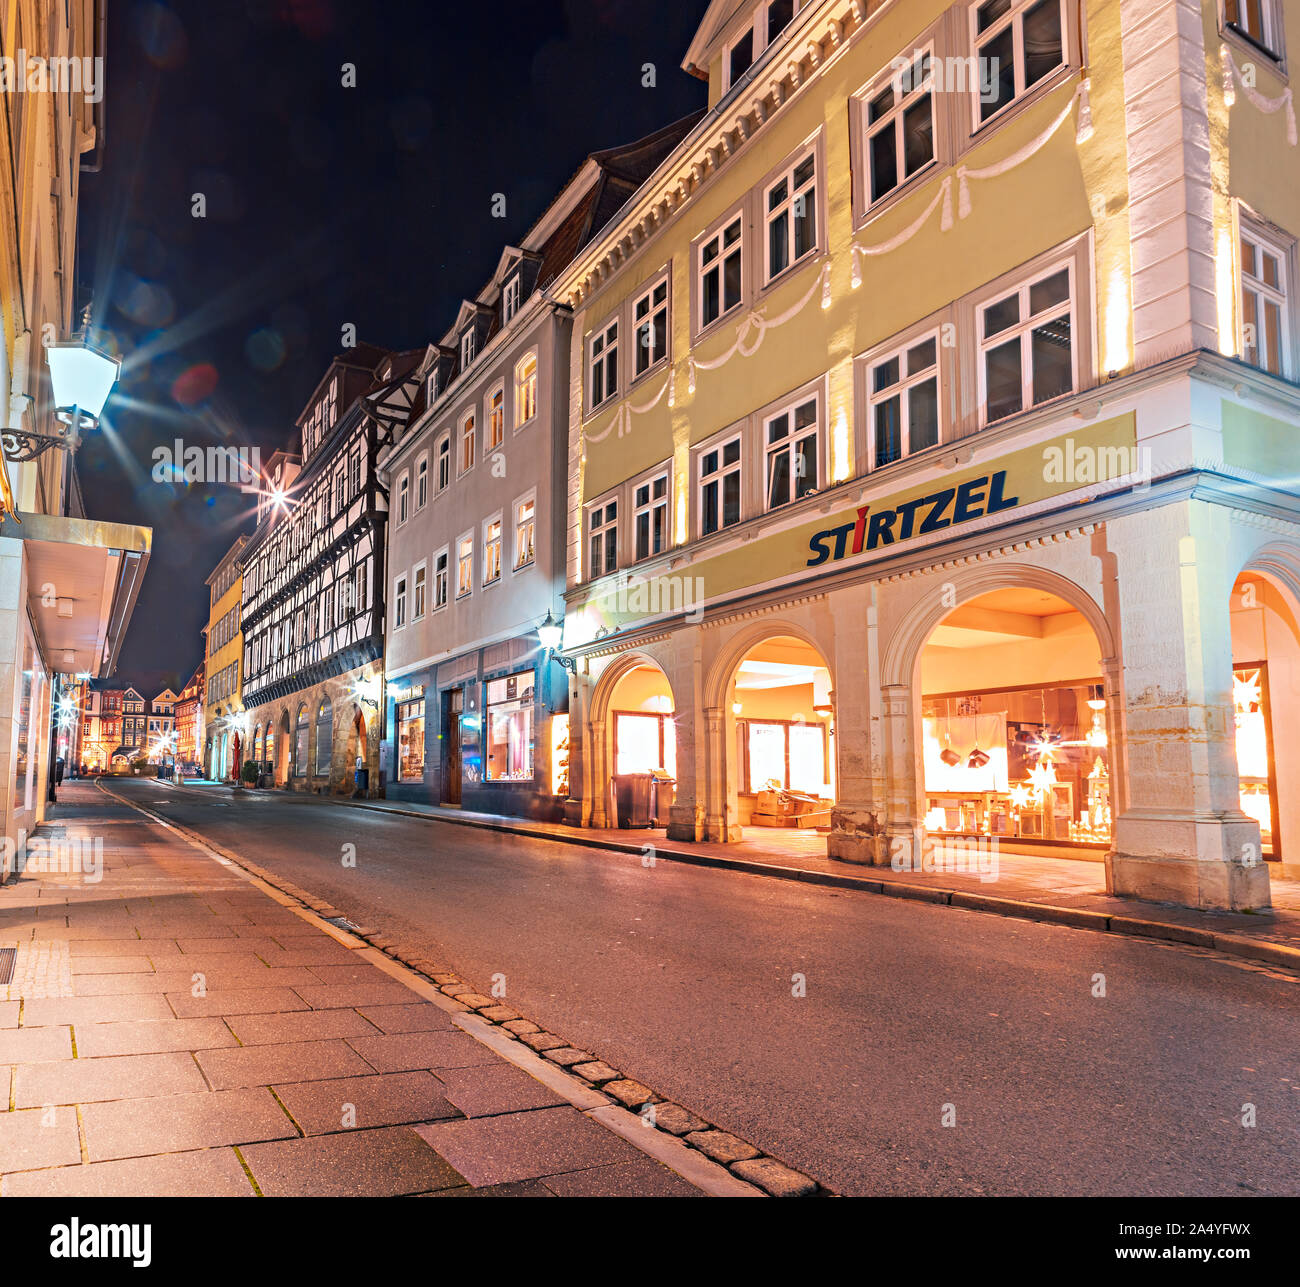 COBURG, ALLEMAGNE - circa 2019, octobre : Le Ketschengasse rue le soir dans la ville de Coburg, Bavière, Allemagne Banque D'Images